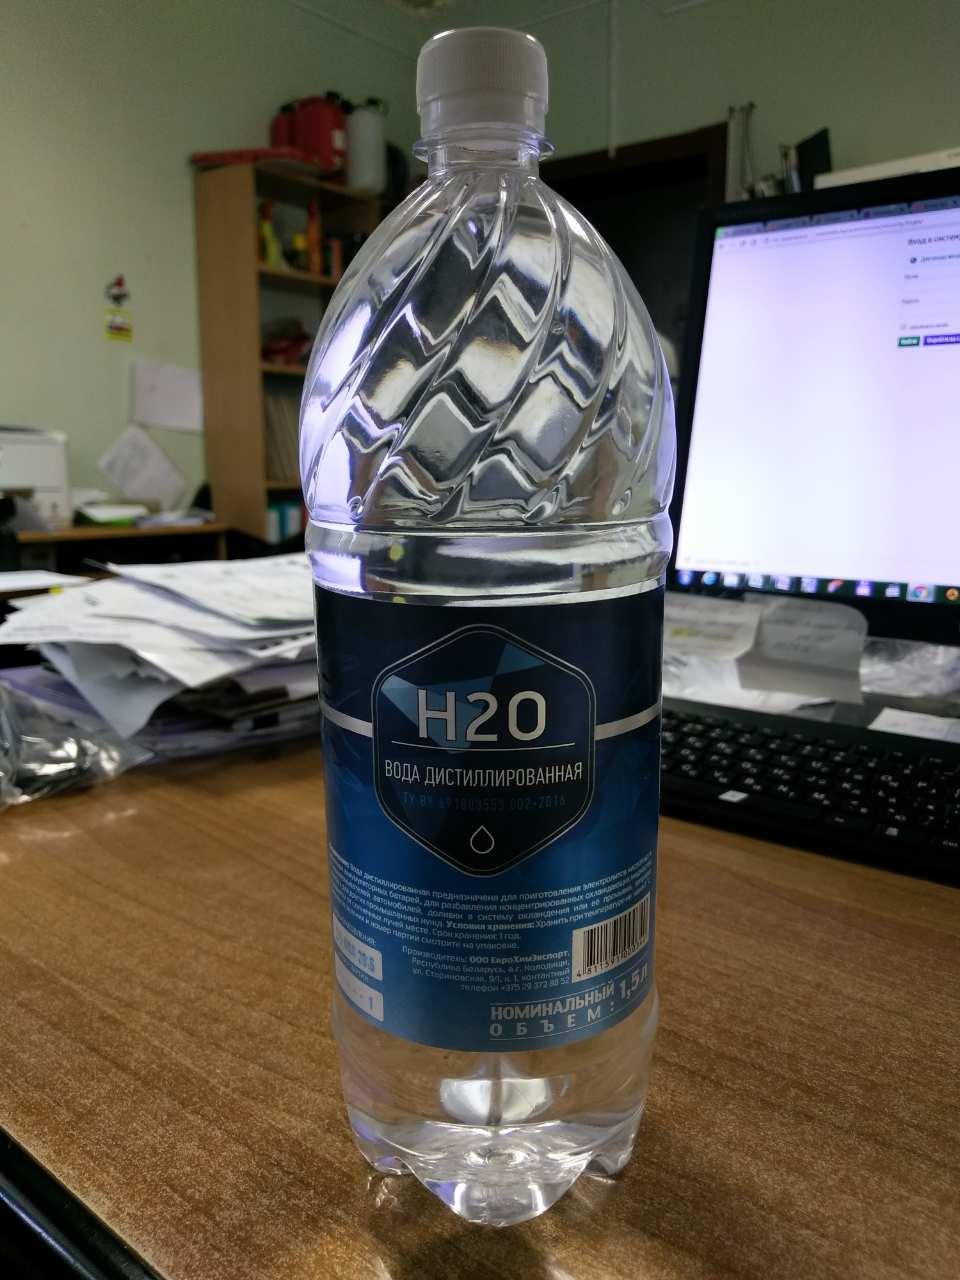 Вода дистиллированная 1.5 л